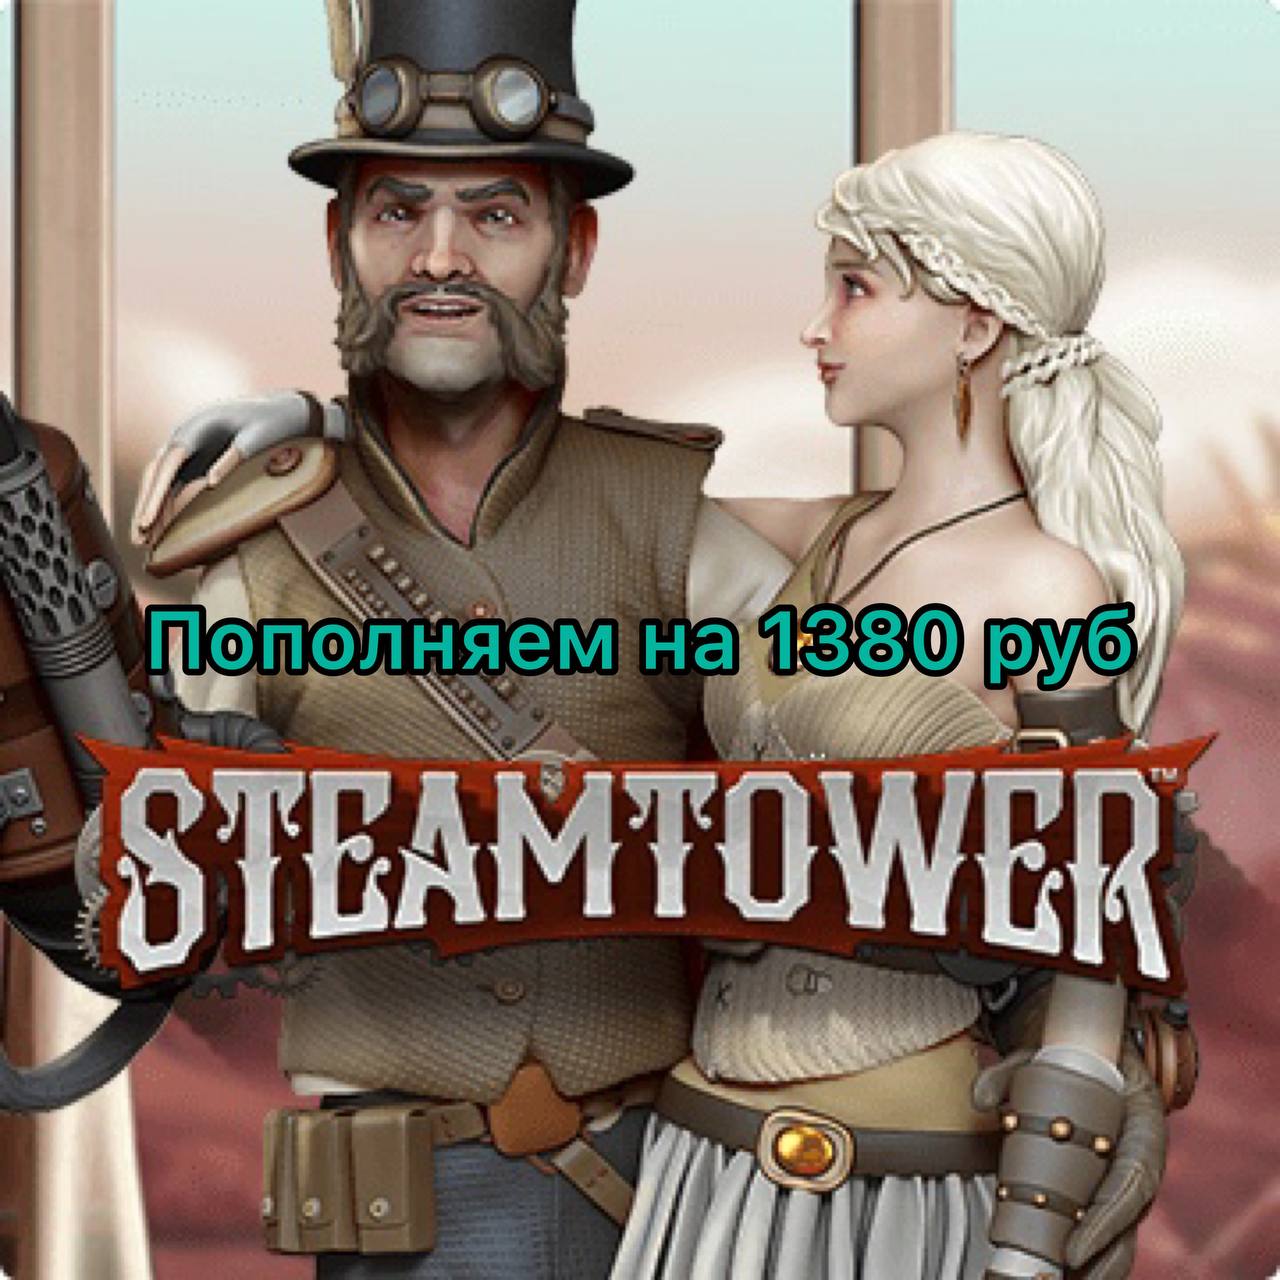 автомат steam tower фото 7